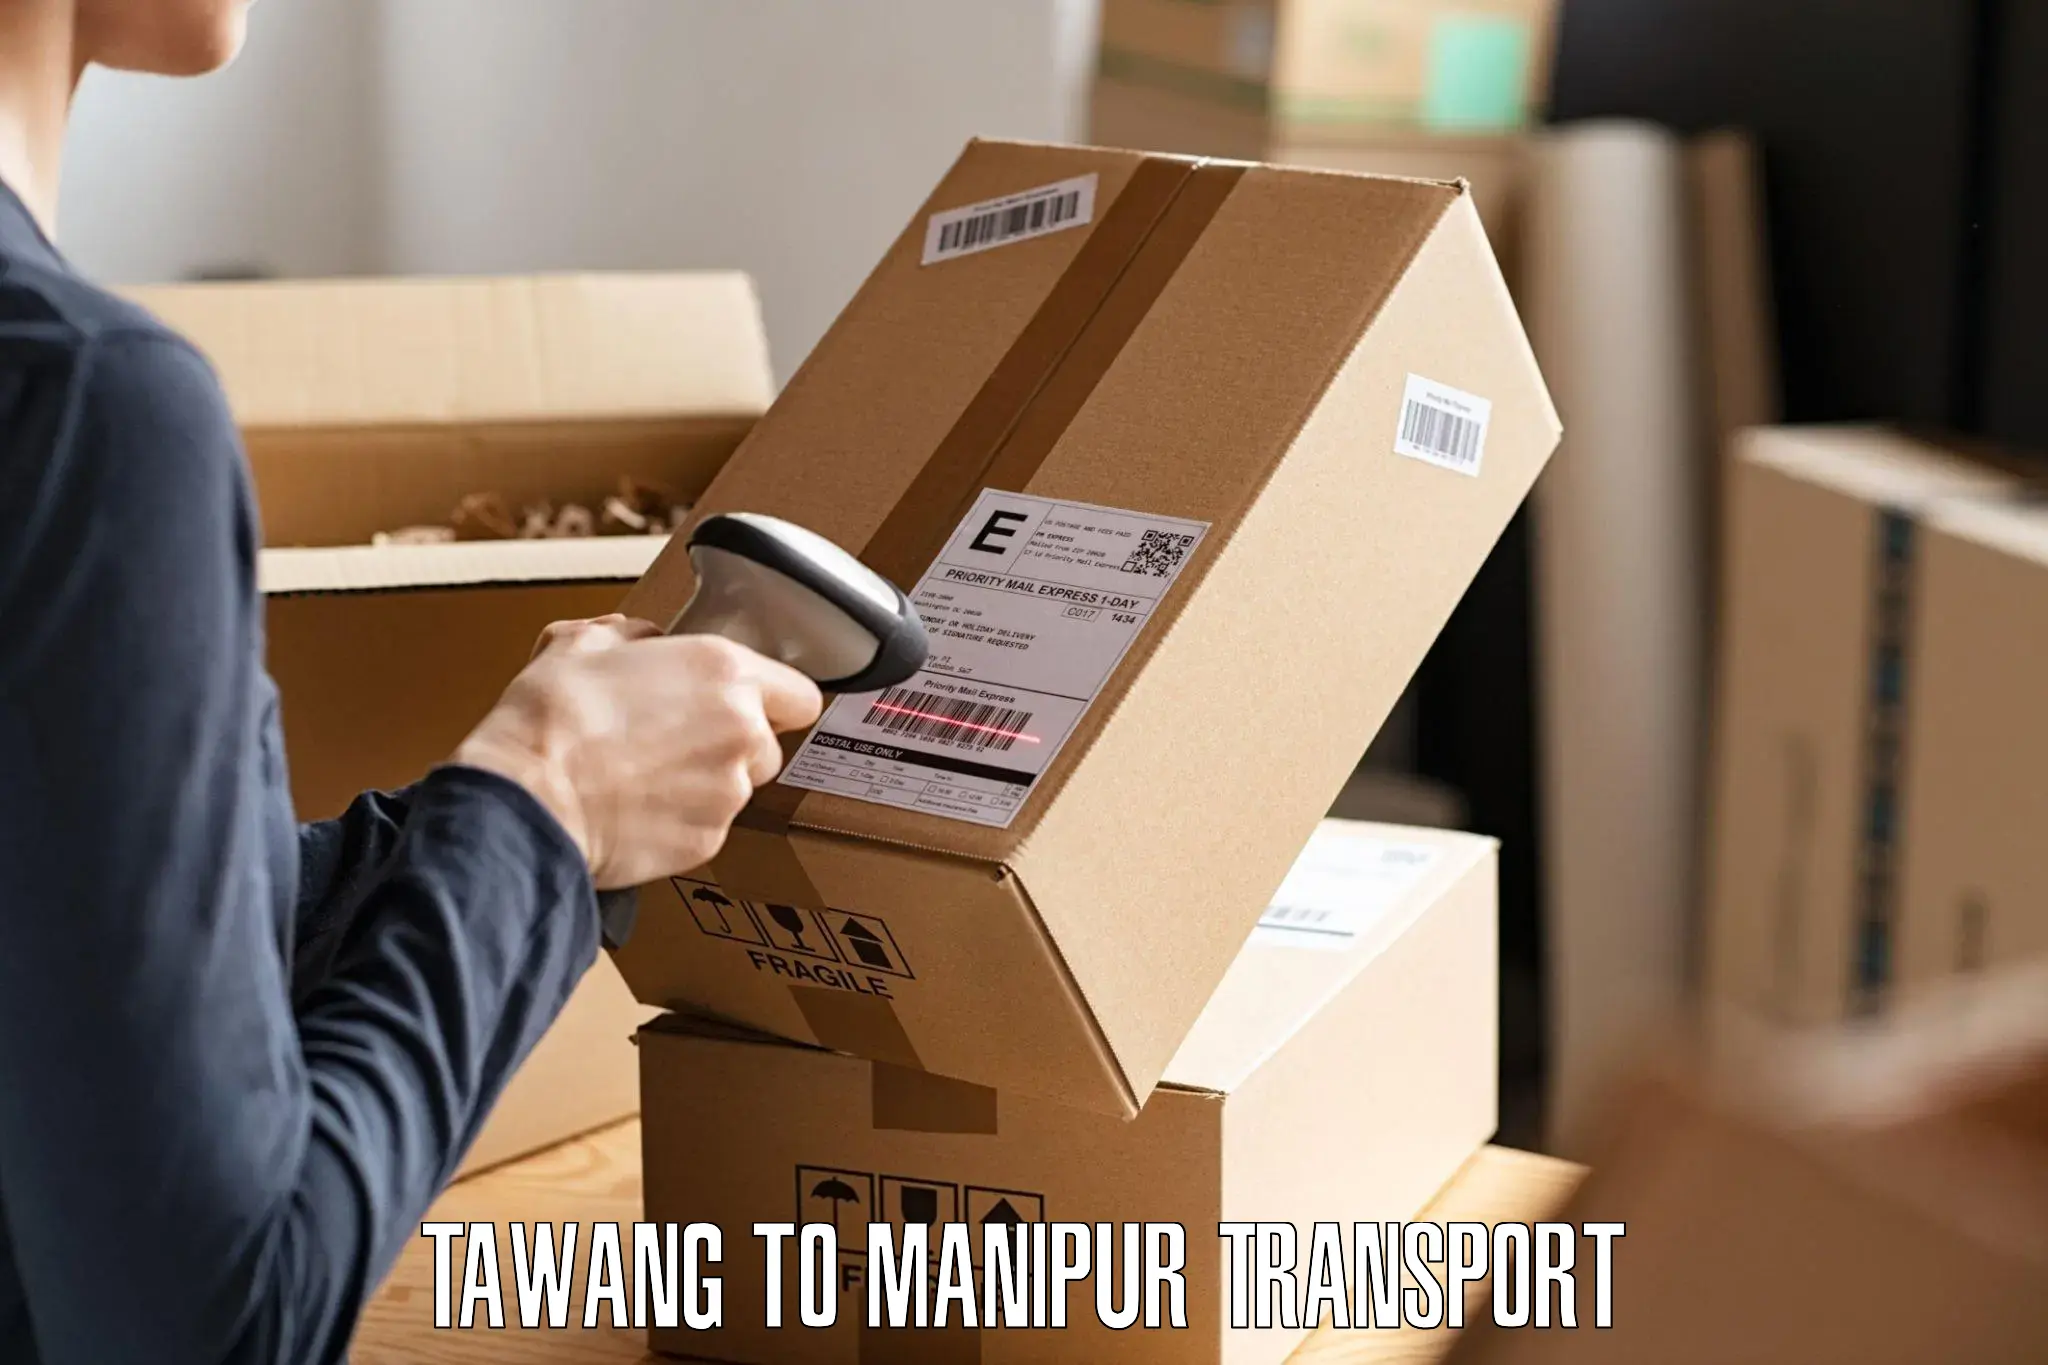 Furniture transport service Tawang to Manipur